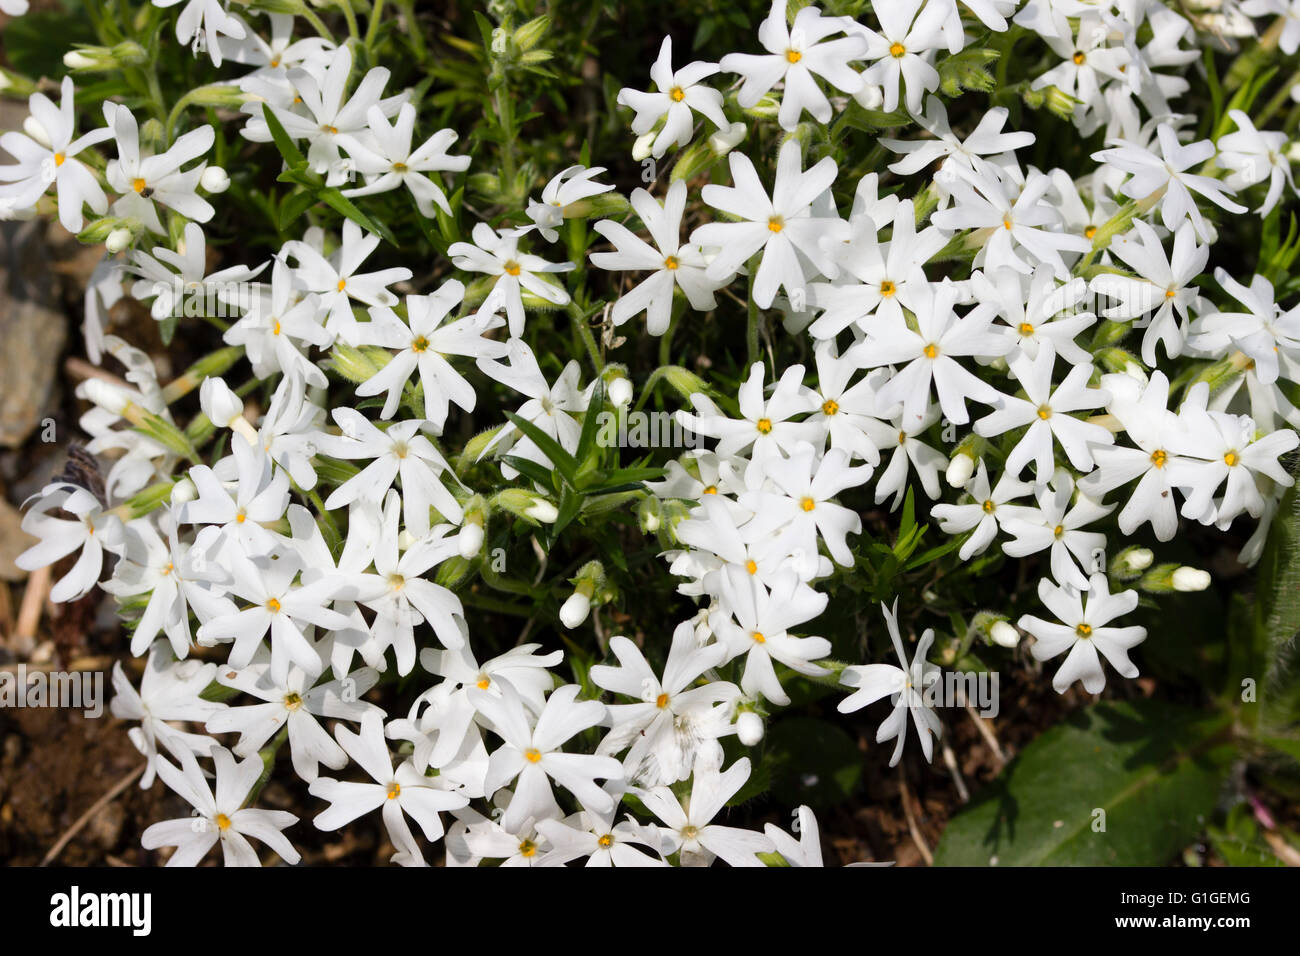 5 pétales de fleurs blanches ornent les tiges rampantes de la moss phlox,  Phlox subulata 'Snowflake' Photo Stock - Alamy